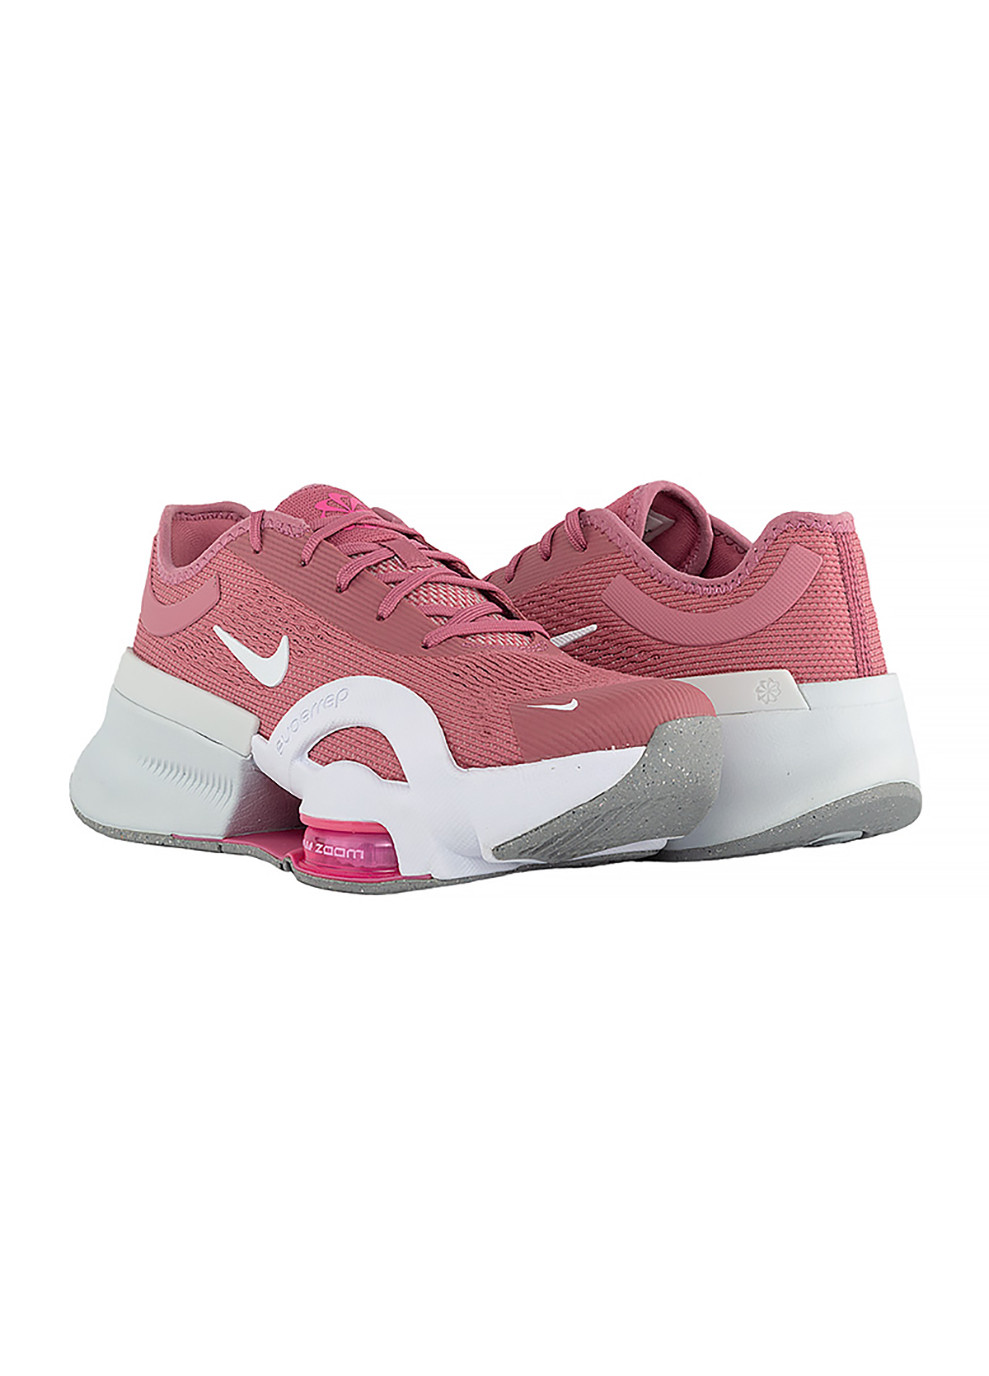 Розовые демисезонные женские кроссовки w zoom superrep 4 nn розовый Nike